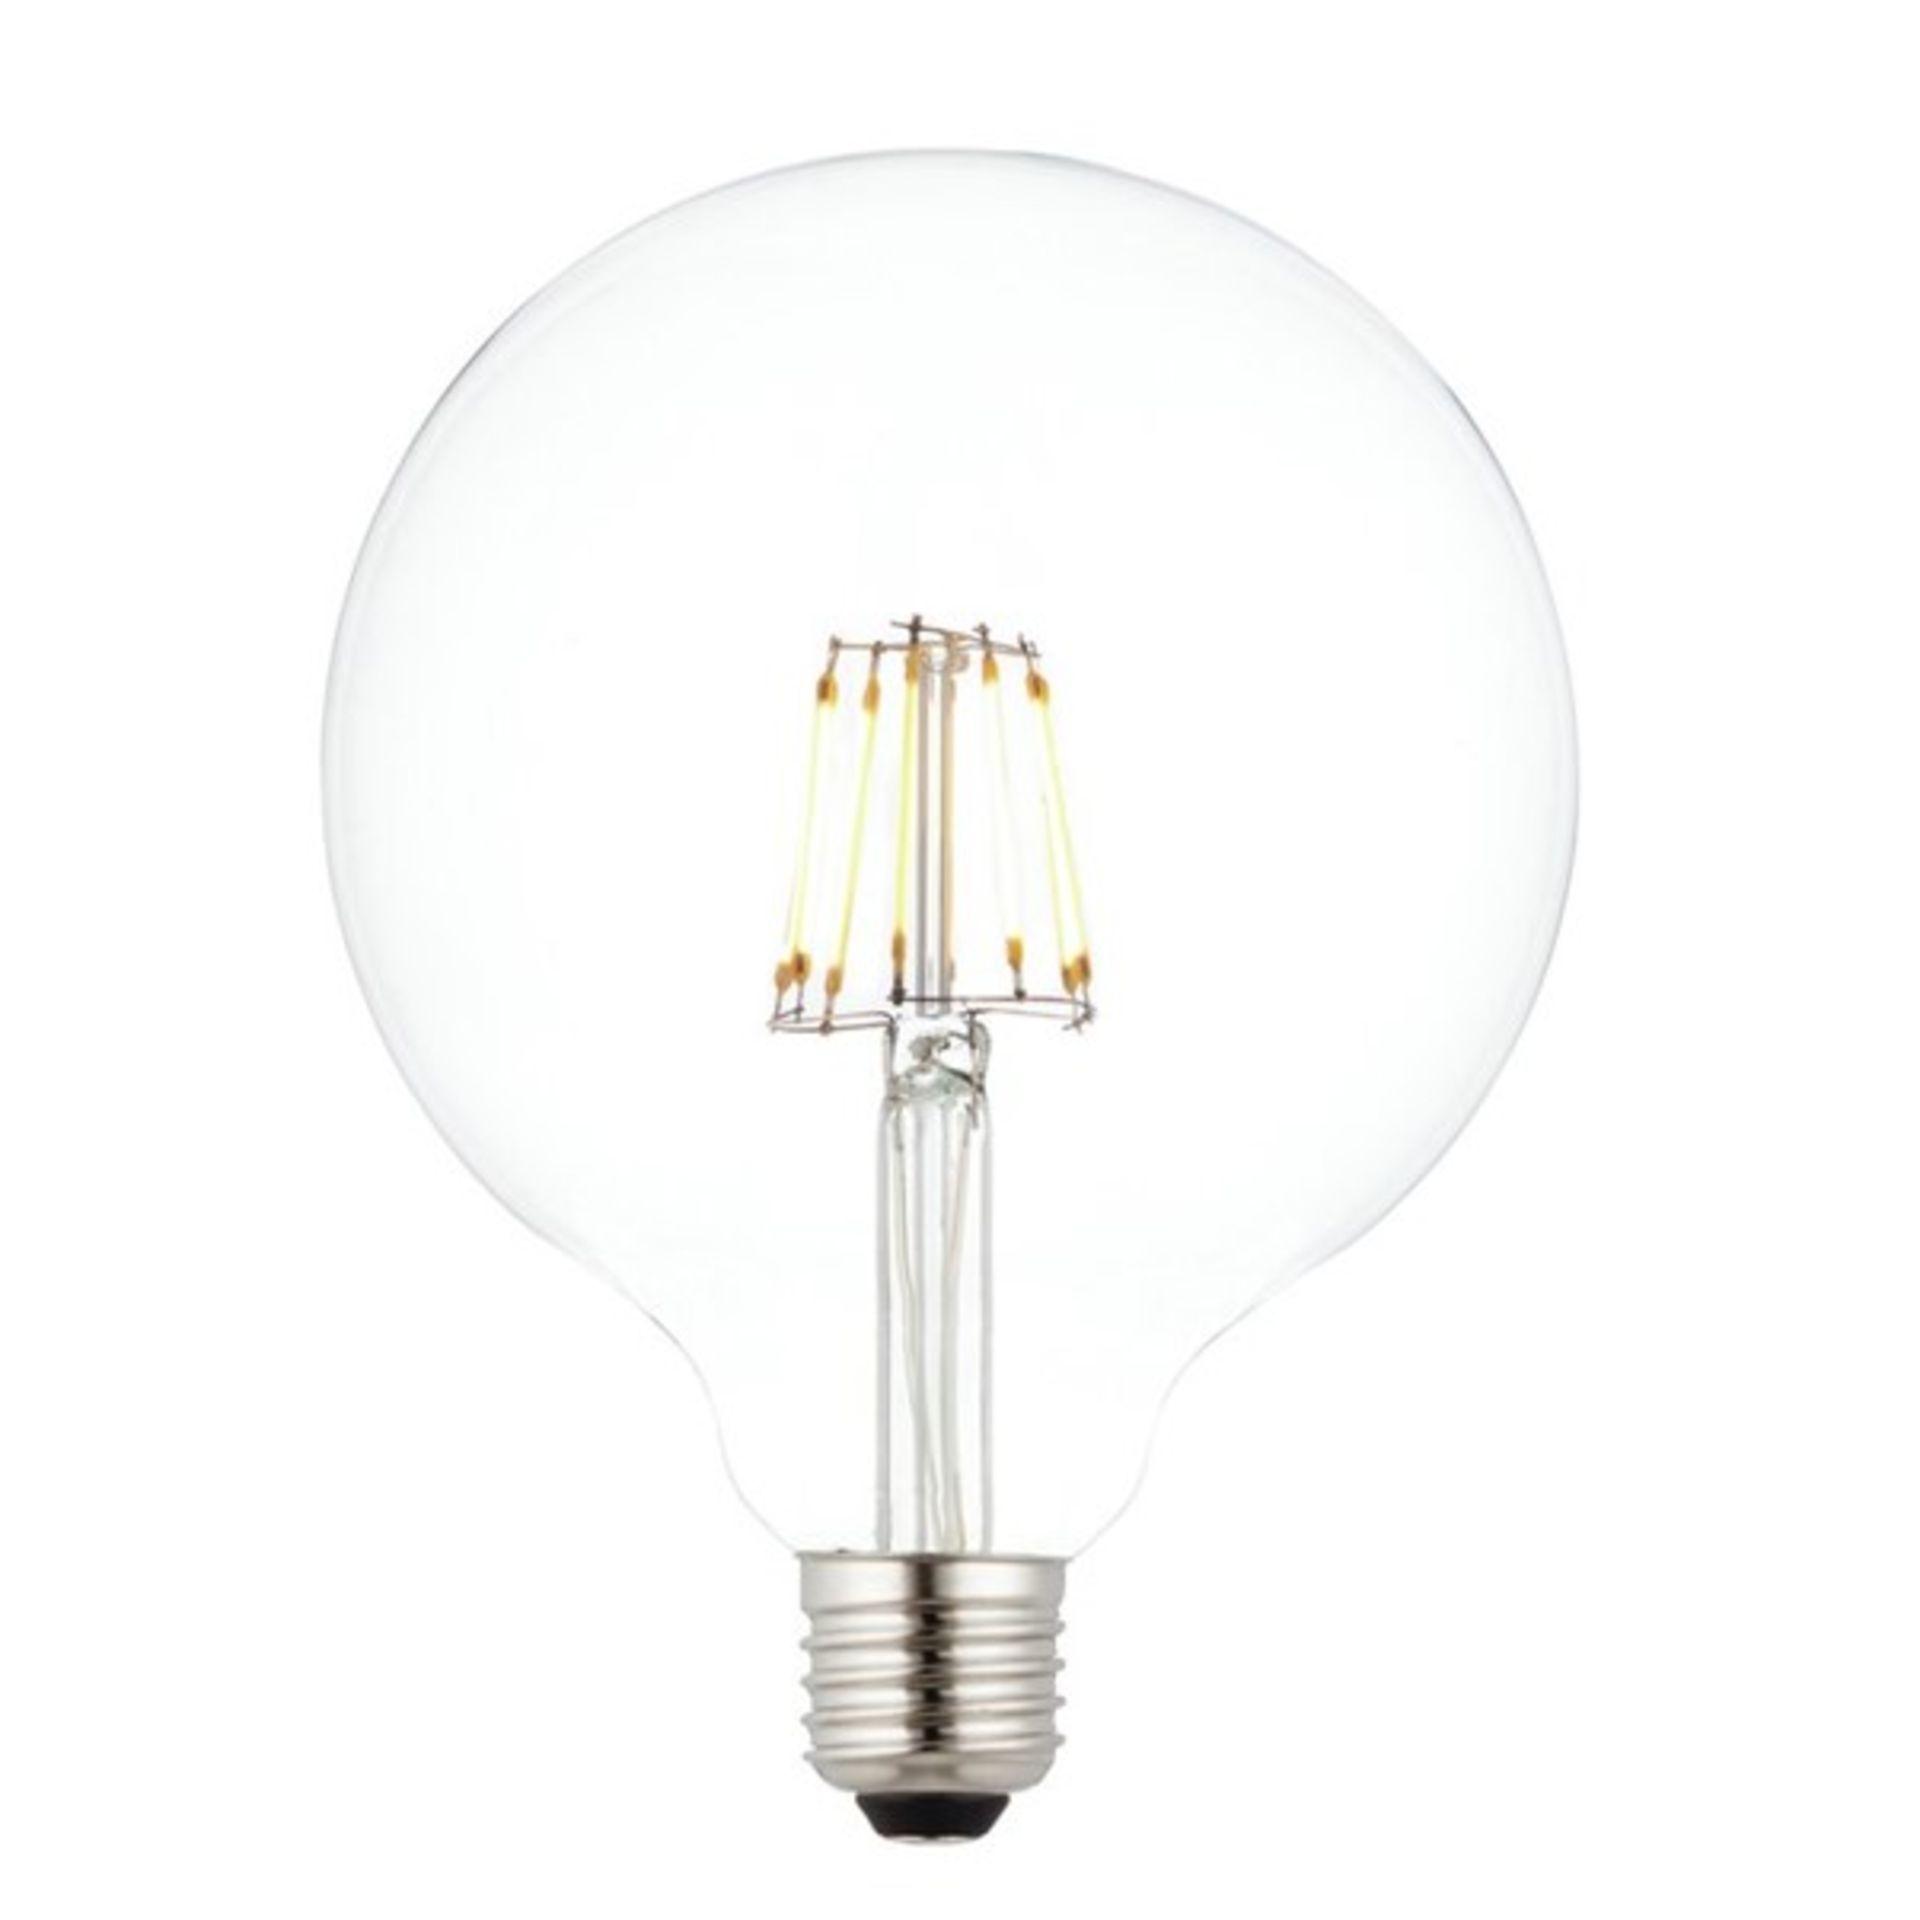 x2 7W LED E27 Vintage Globe Light Bulb - RRP £30.00.